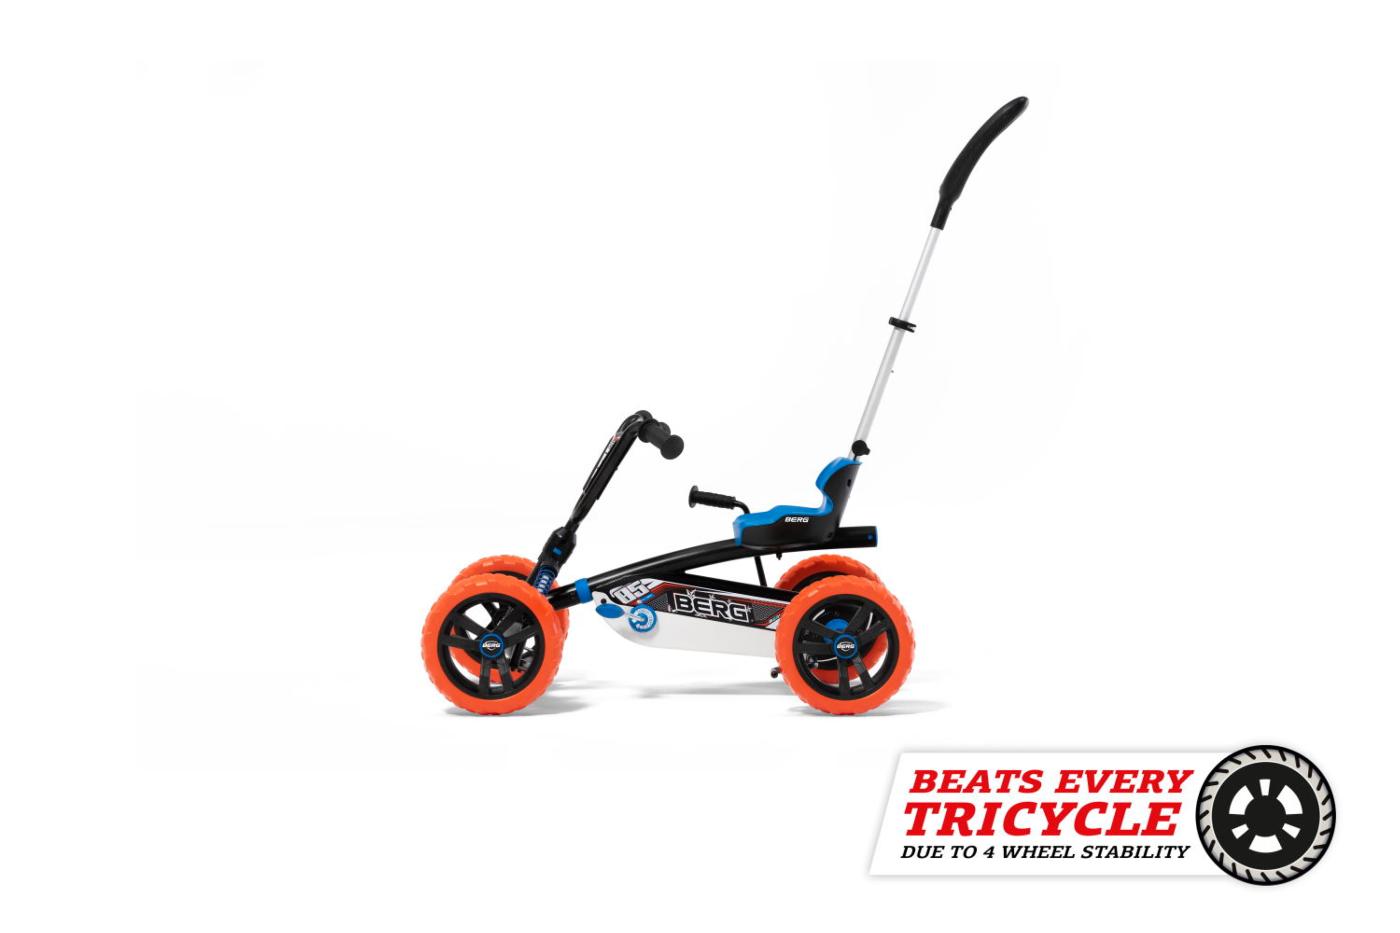 Coche de pedales evolutivo BERG Buzzy Nitro 2 en 1 con barra de empuje, mejor que un triciclo